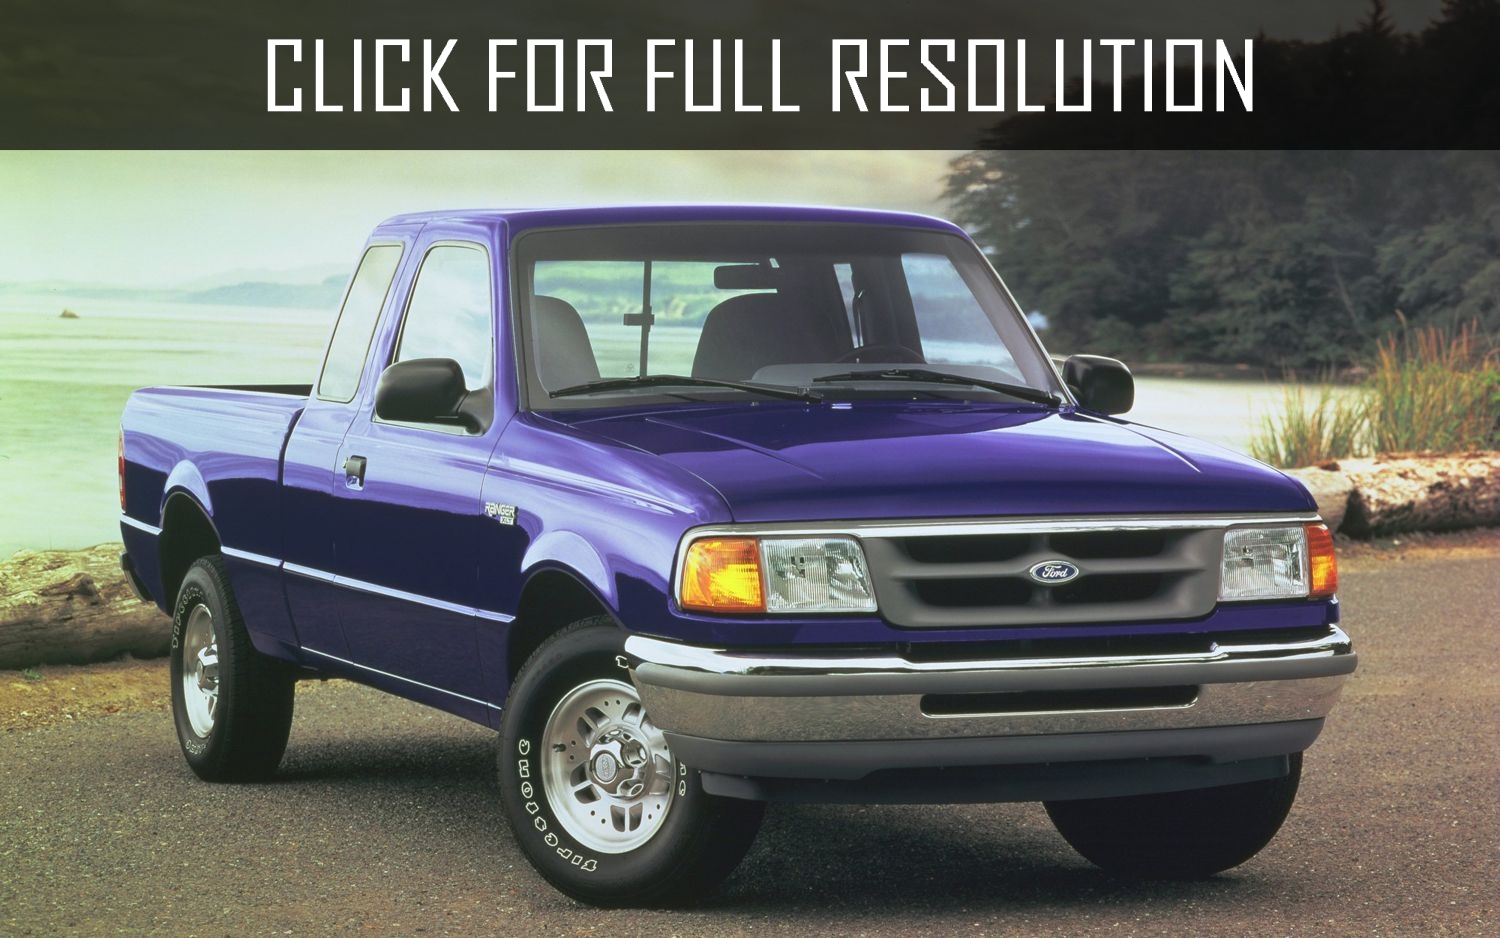 Ford Ranger 1996